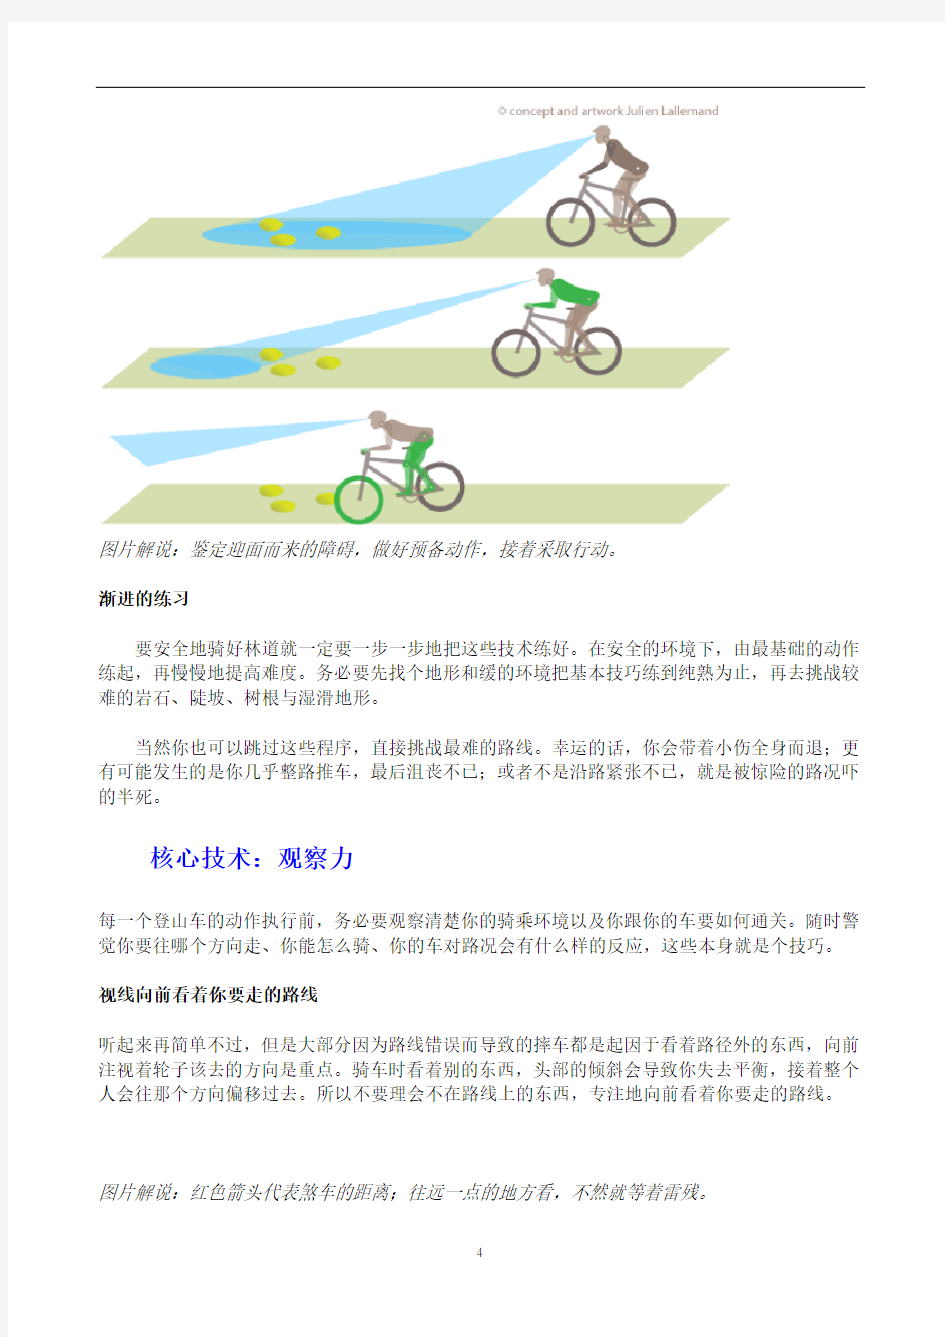 图解山地自行车骑行技巧解析